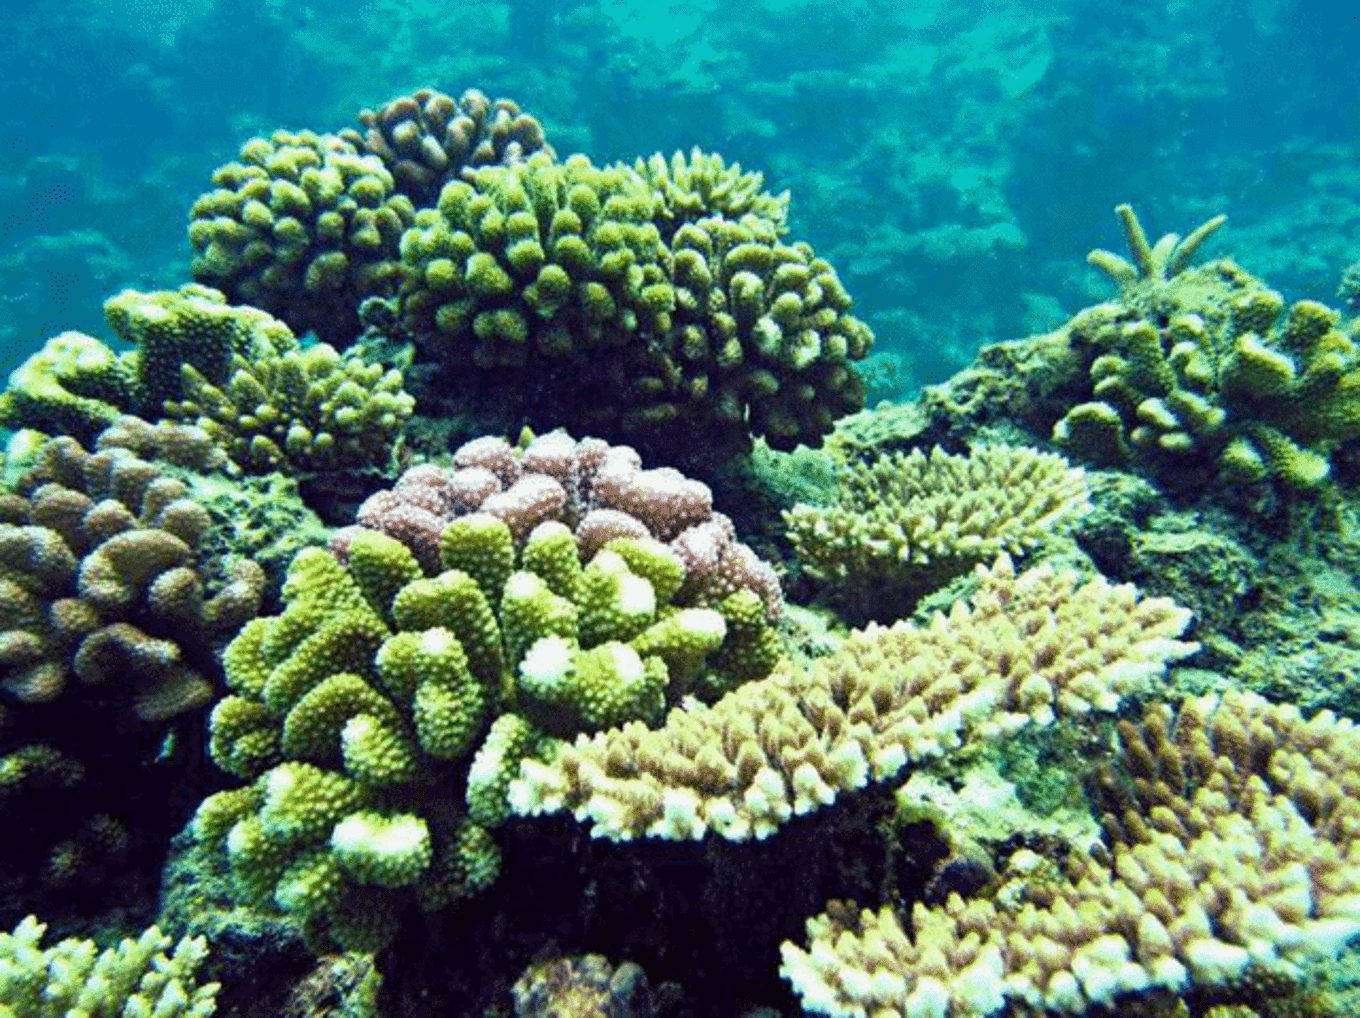 石珊瑚 库存照片. 图片 包括有 回归线, 苏拉威西, 印度尼西亚, 珊瑚, 世界, 海运, 本质, 水下 - 180221702